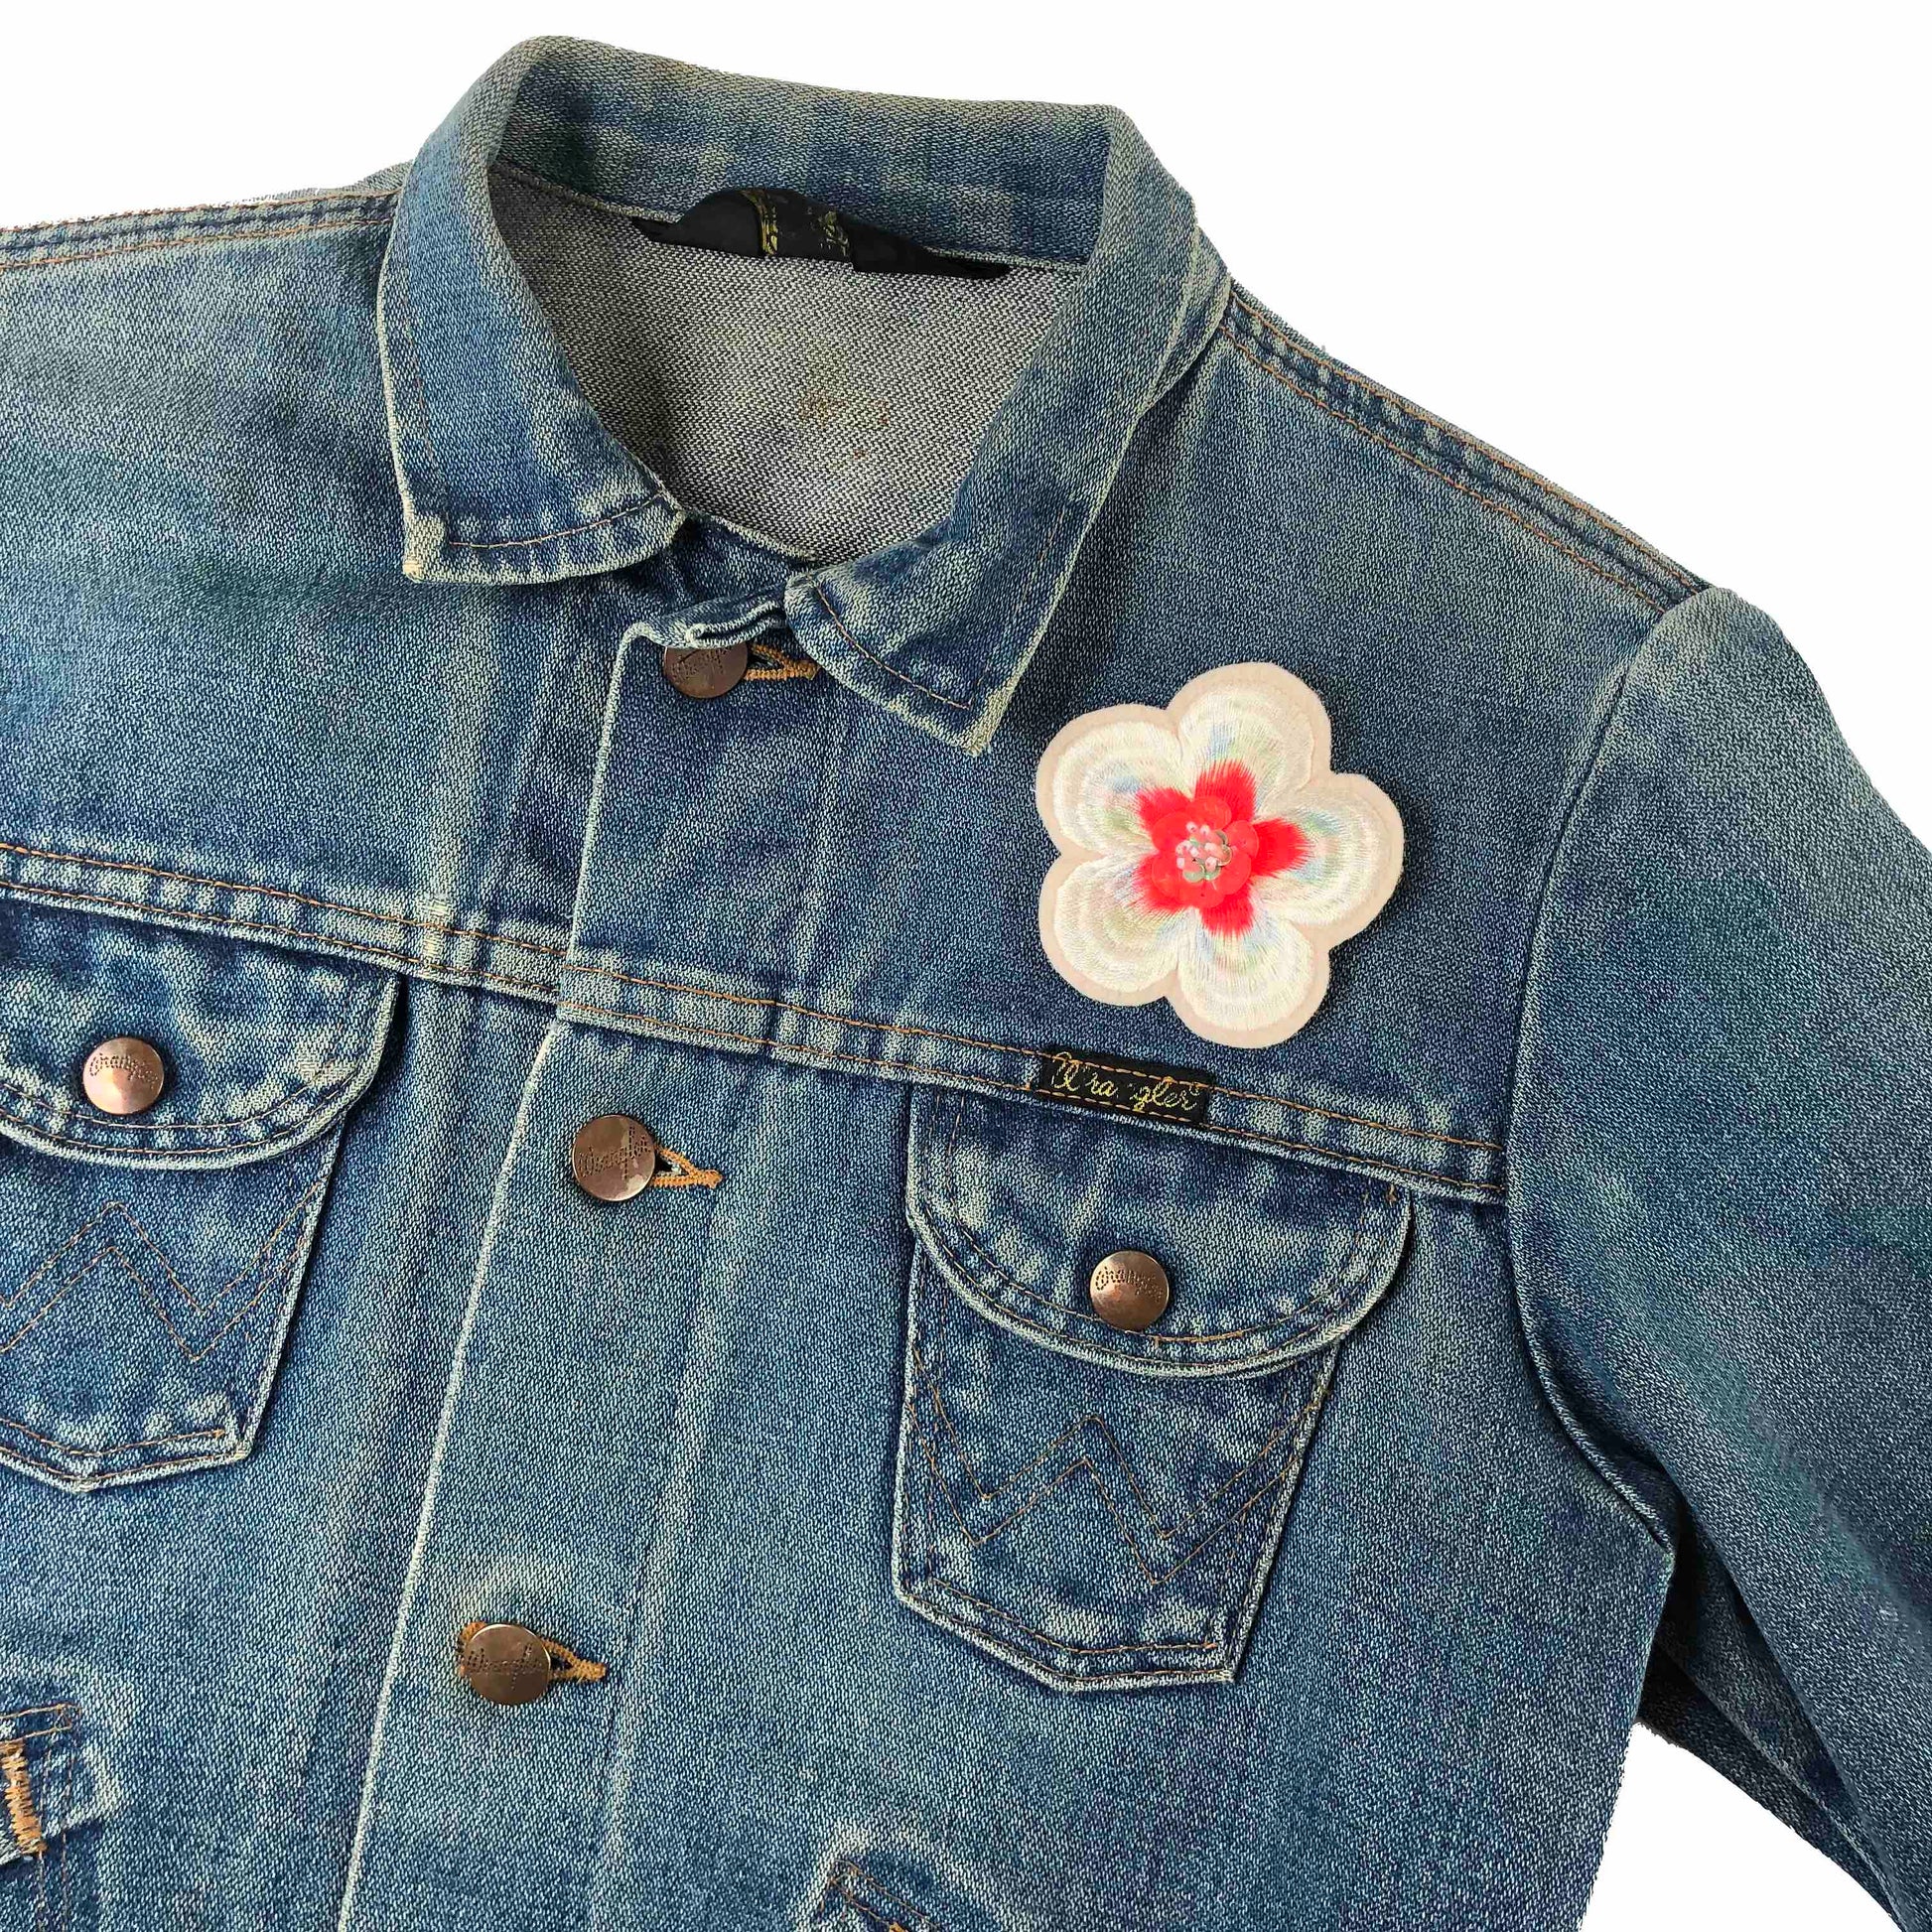 Embellished flower patch on front shoulder of a dark denim jacket